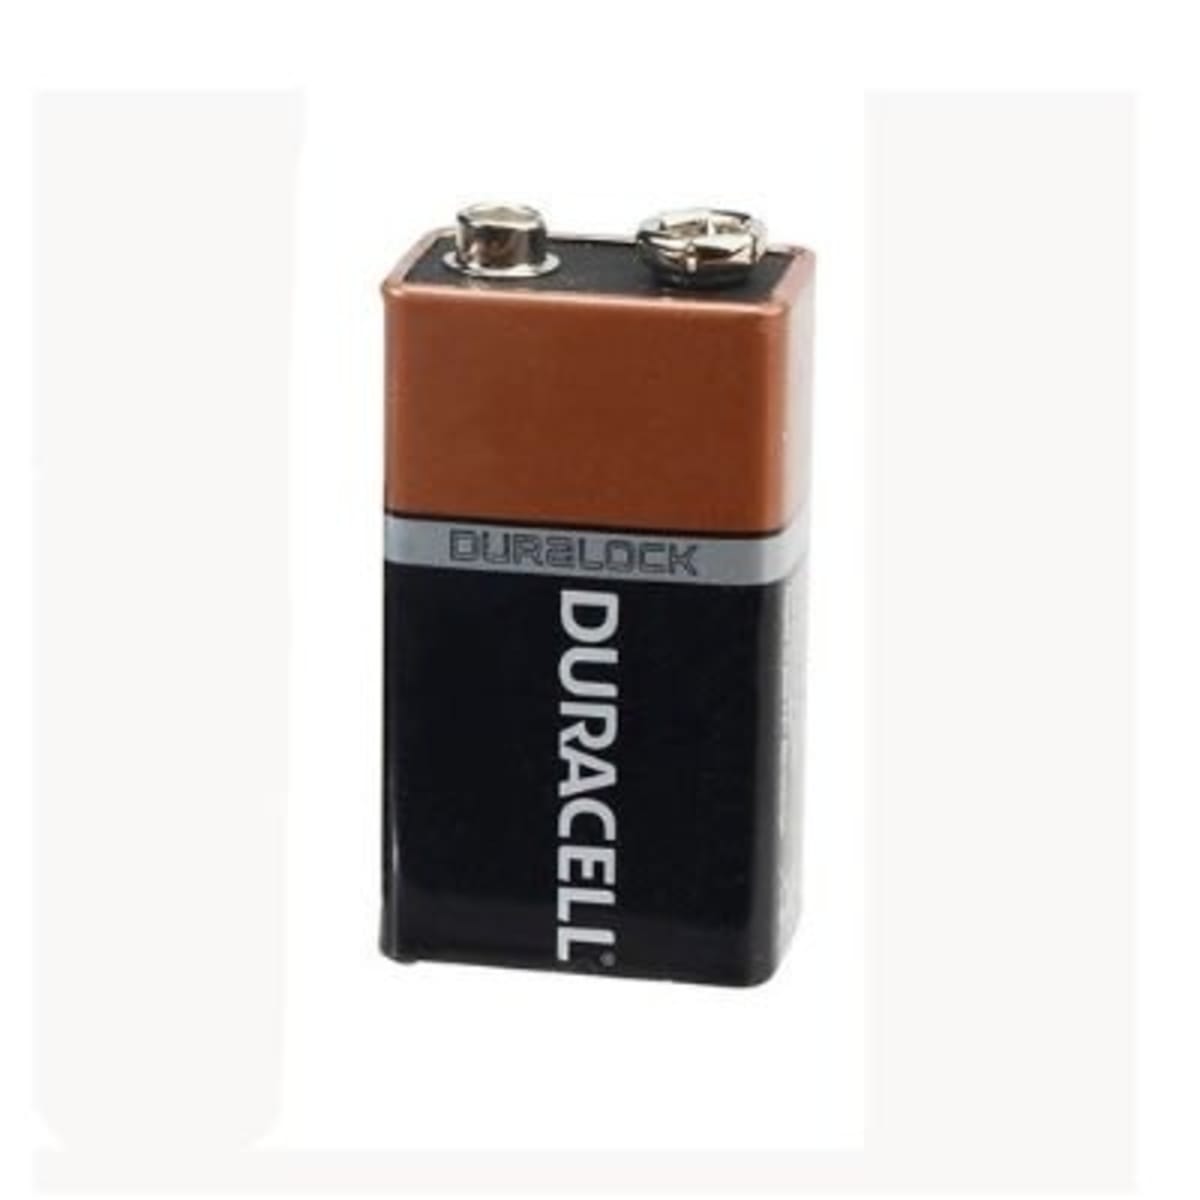 Duracell 9V Battery  Konga Online Shopping